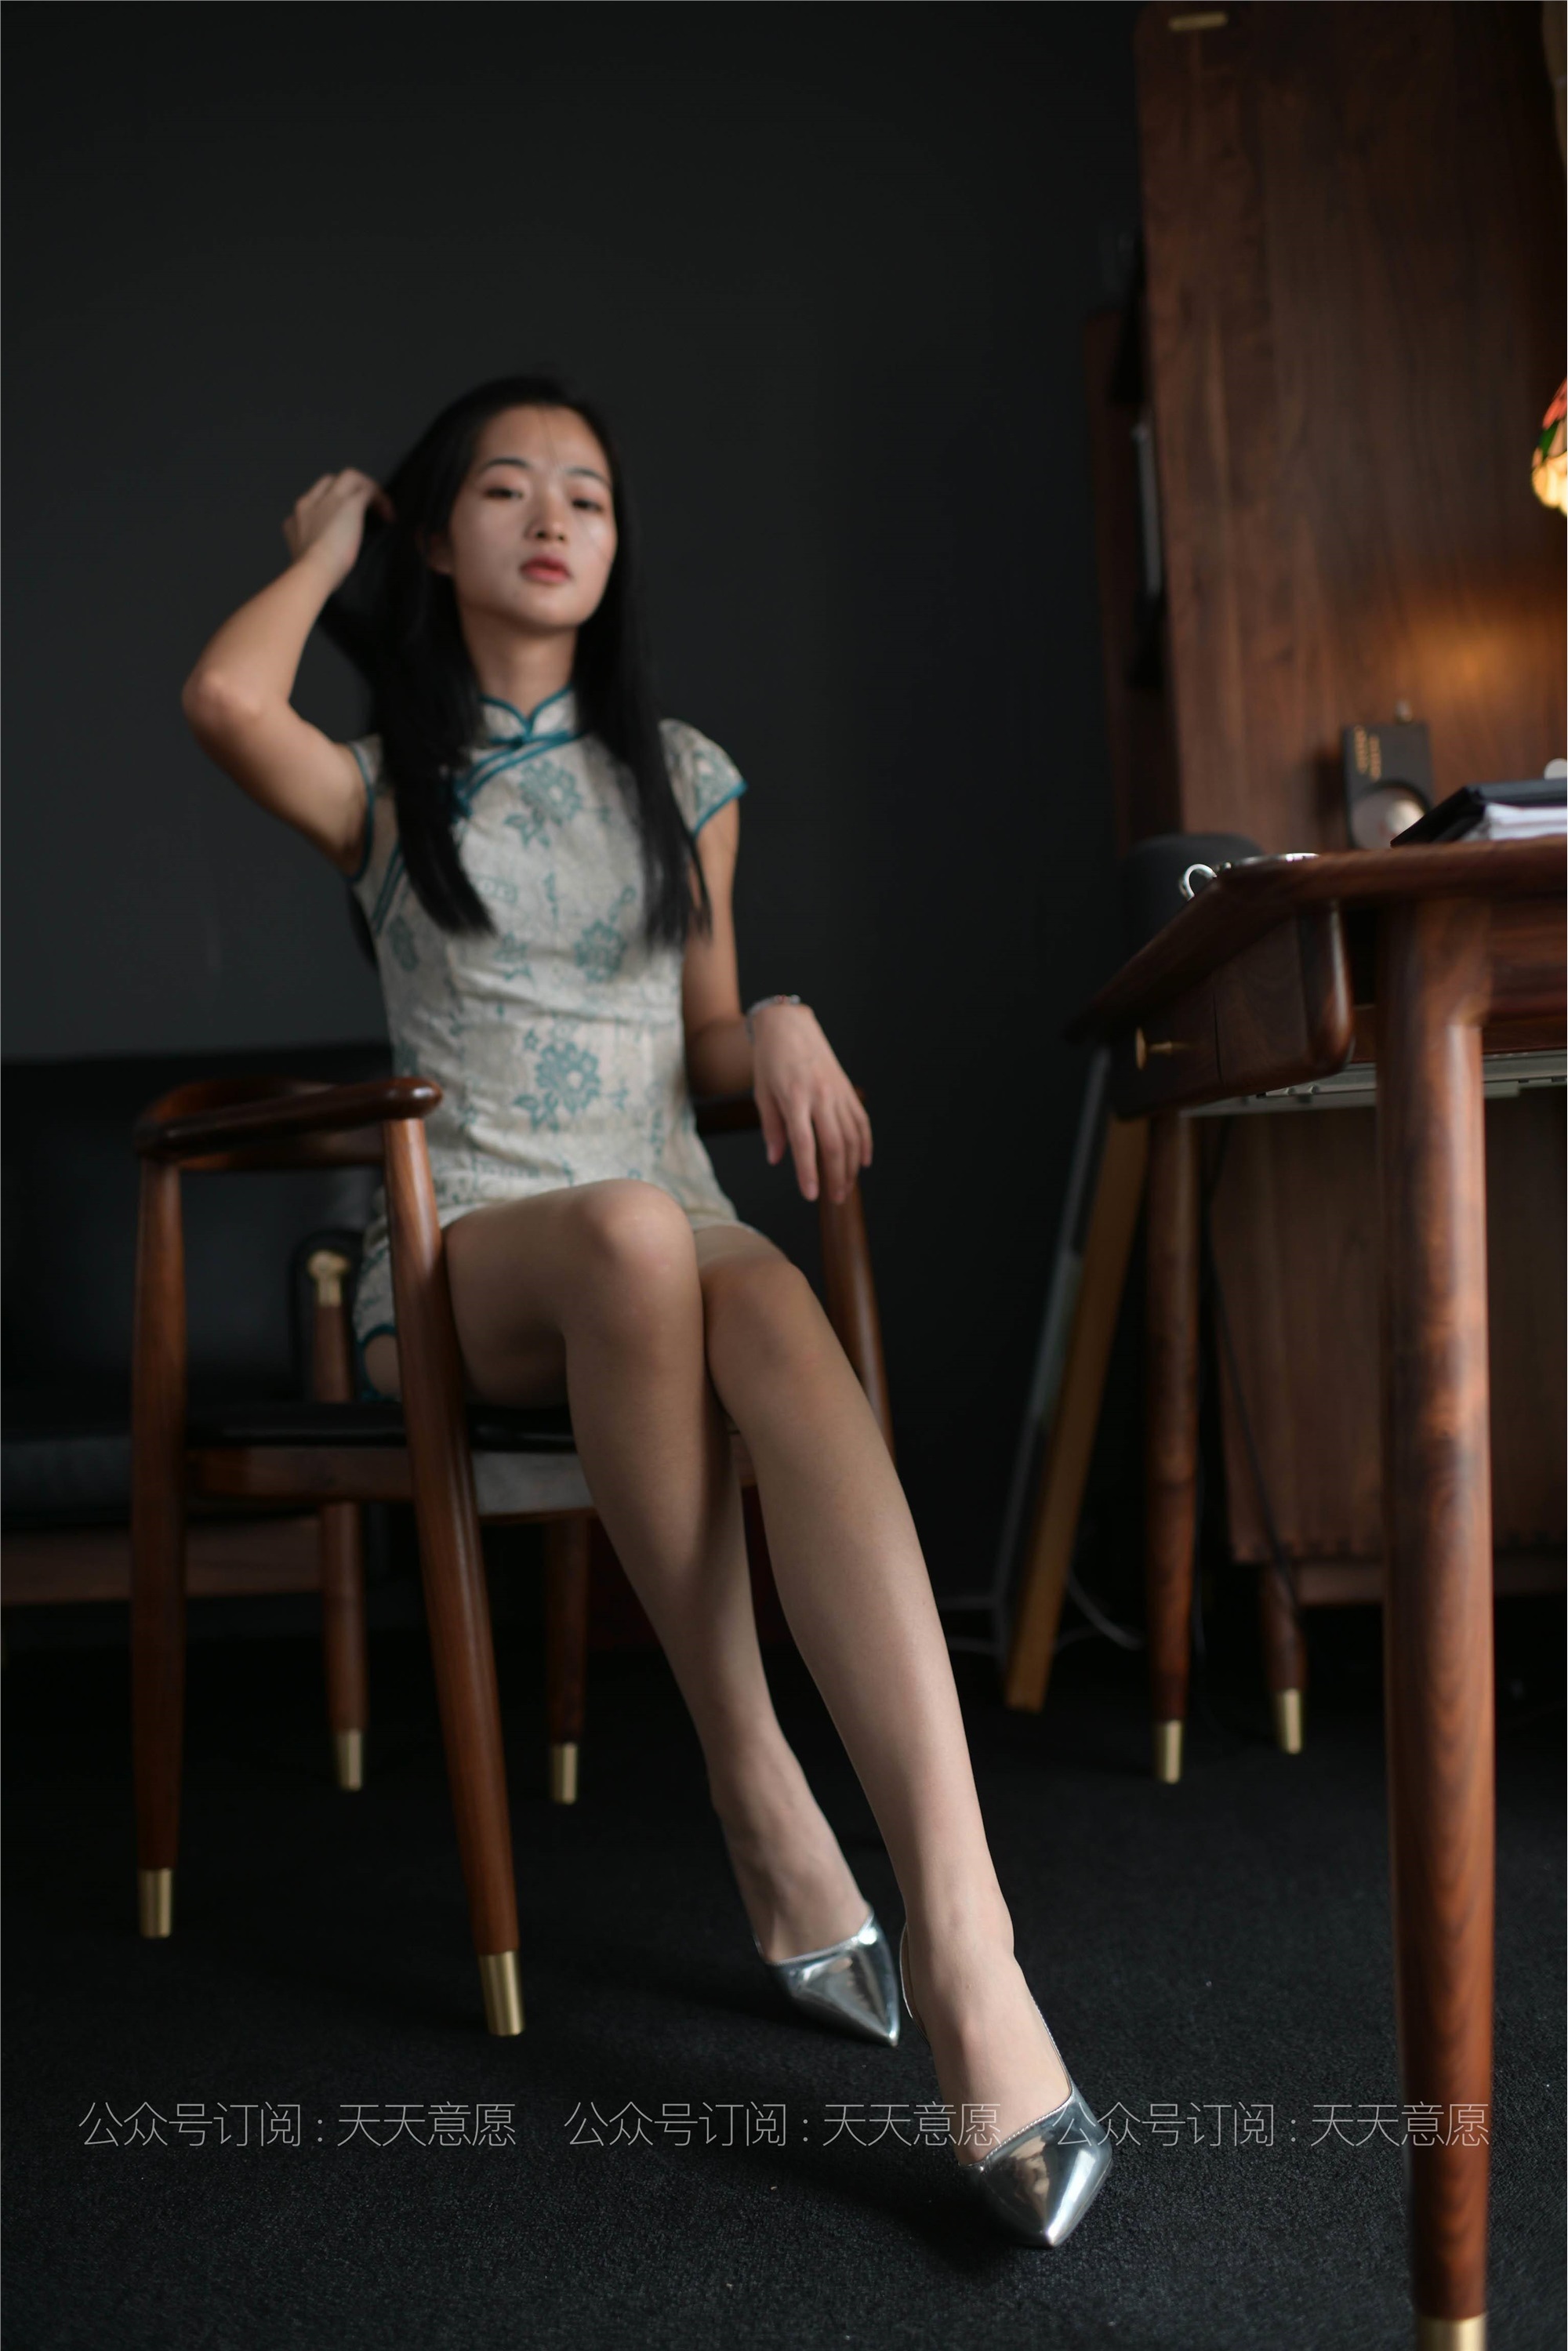 Model: Ning Ning, The Cheongsam Beauty who Loves Reading